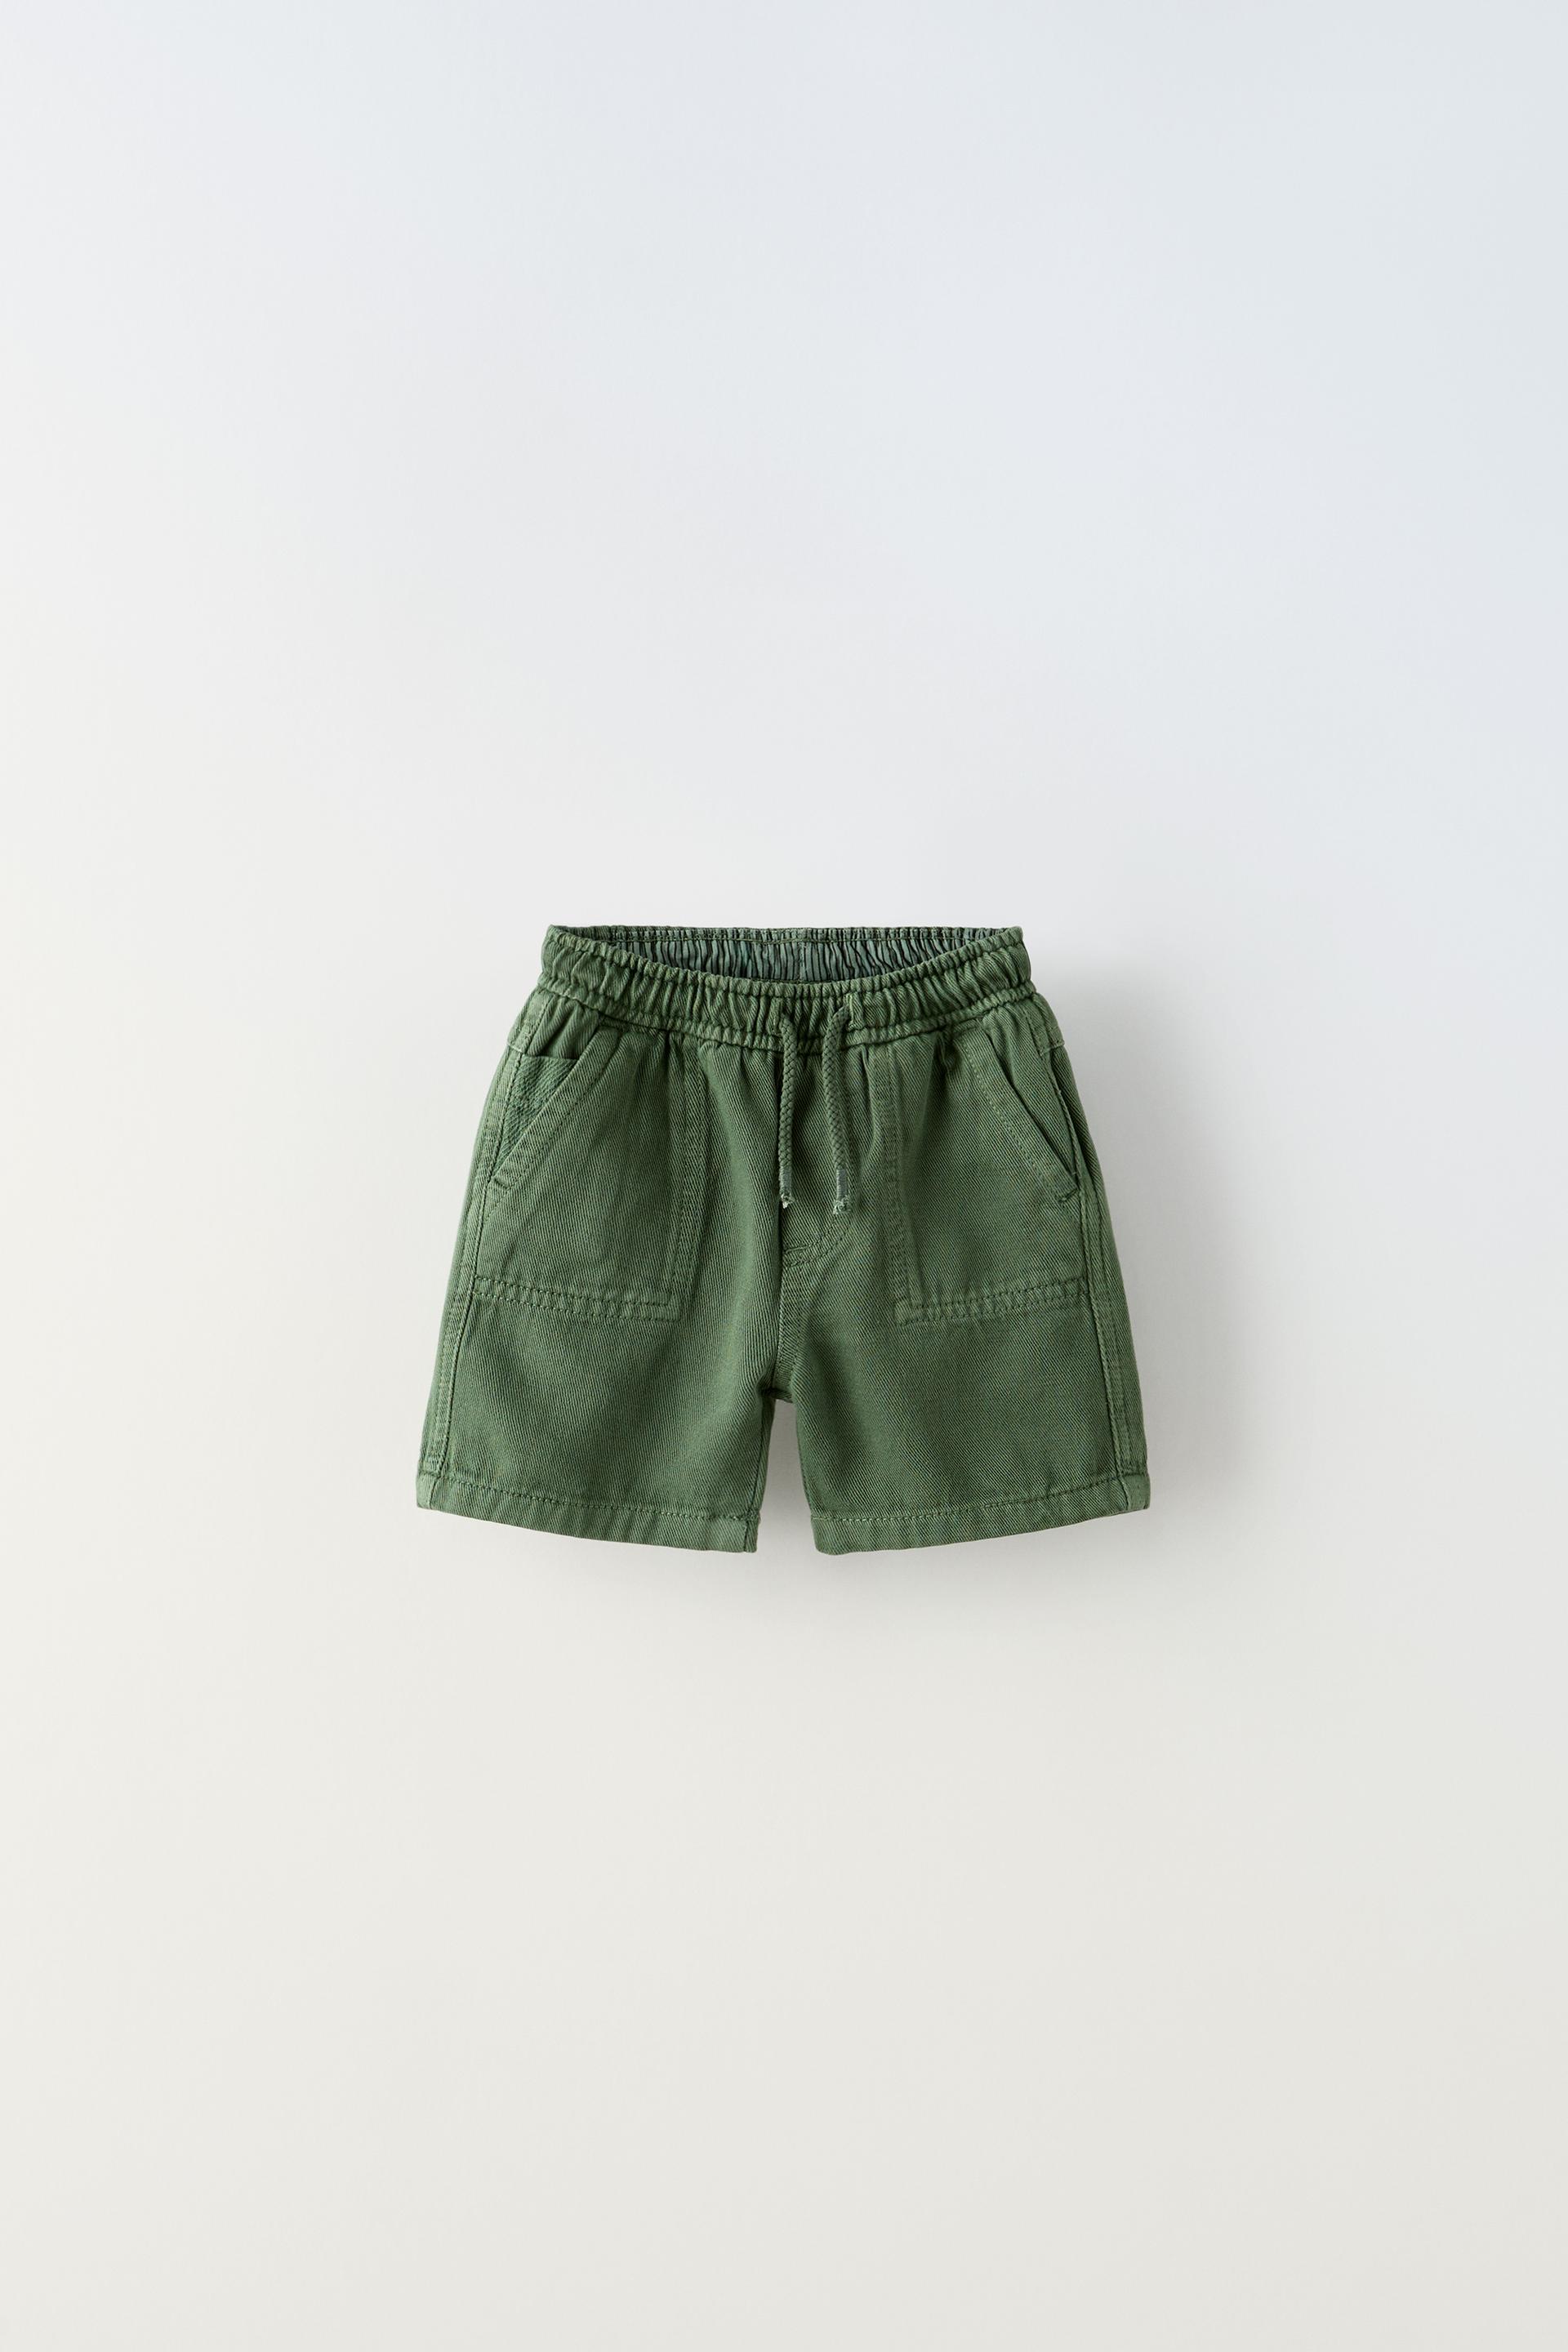 C&A MULTIPACK 2 PACK - Denim shorts - green - Zalando.de